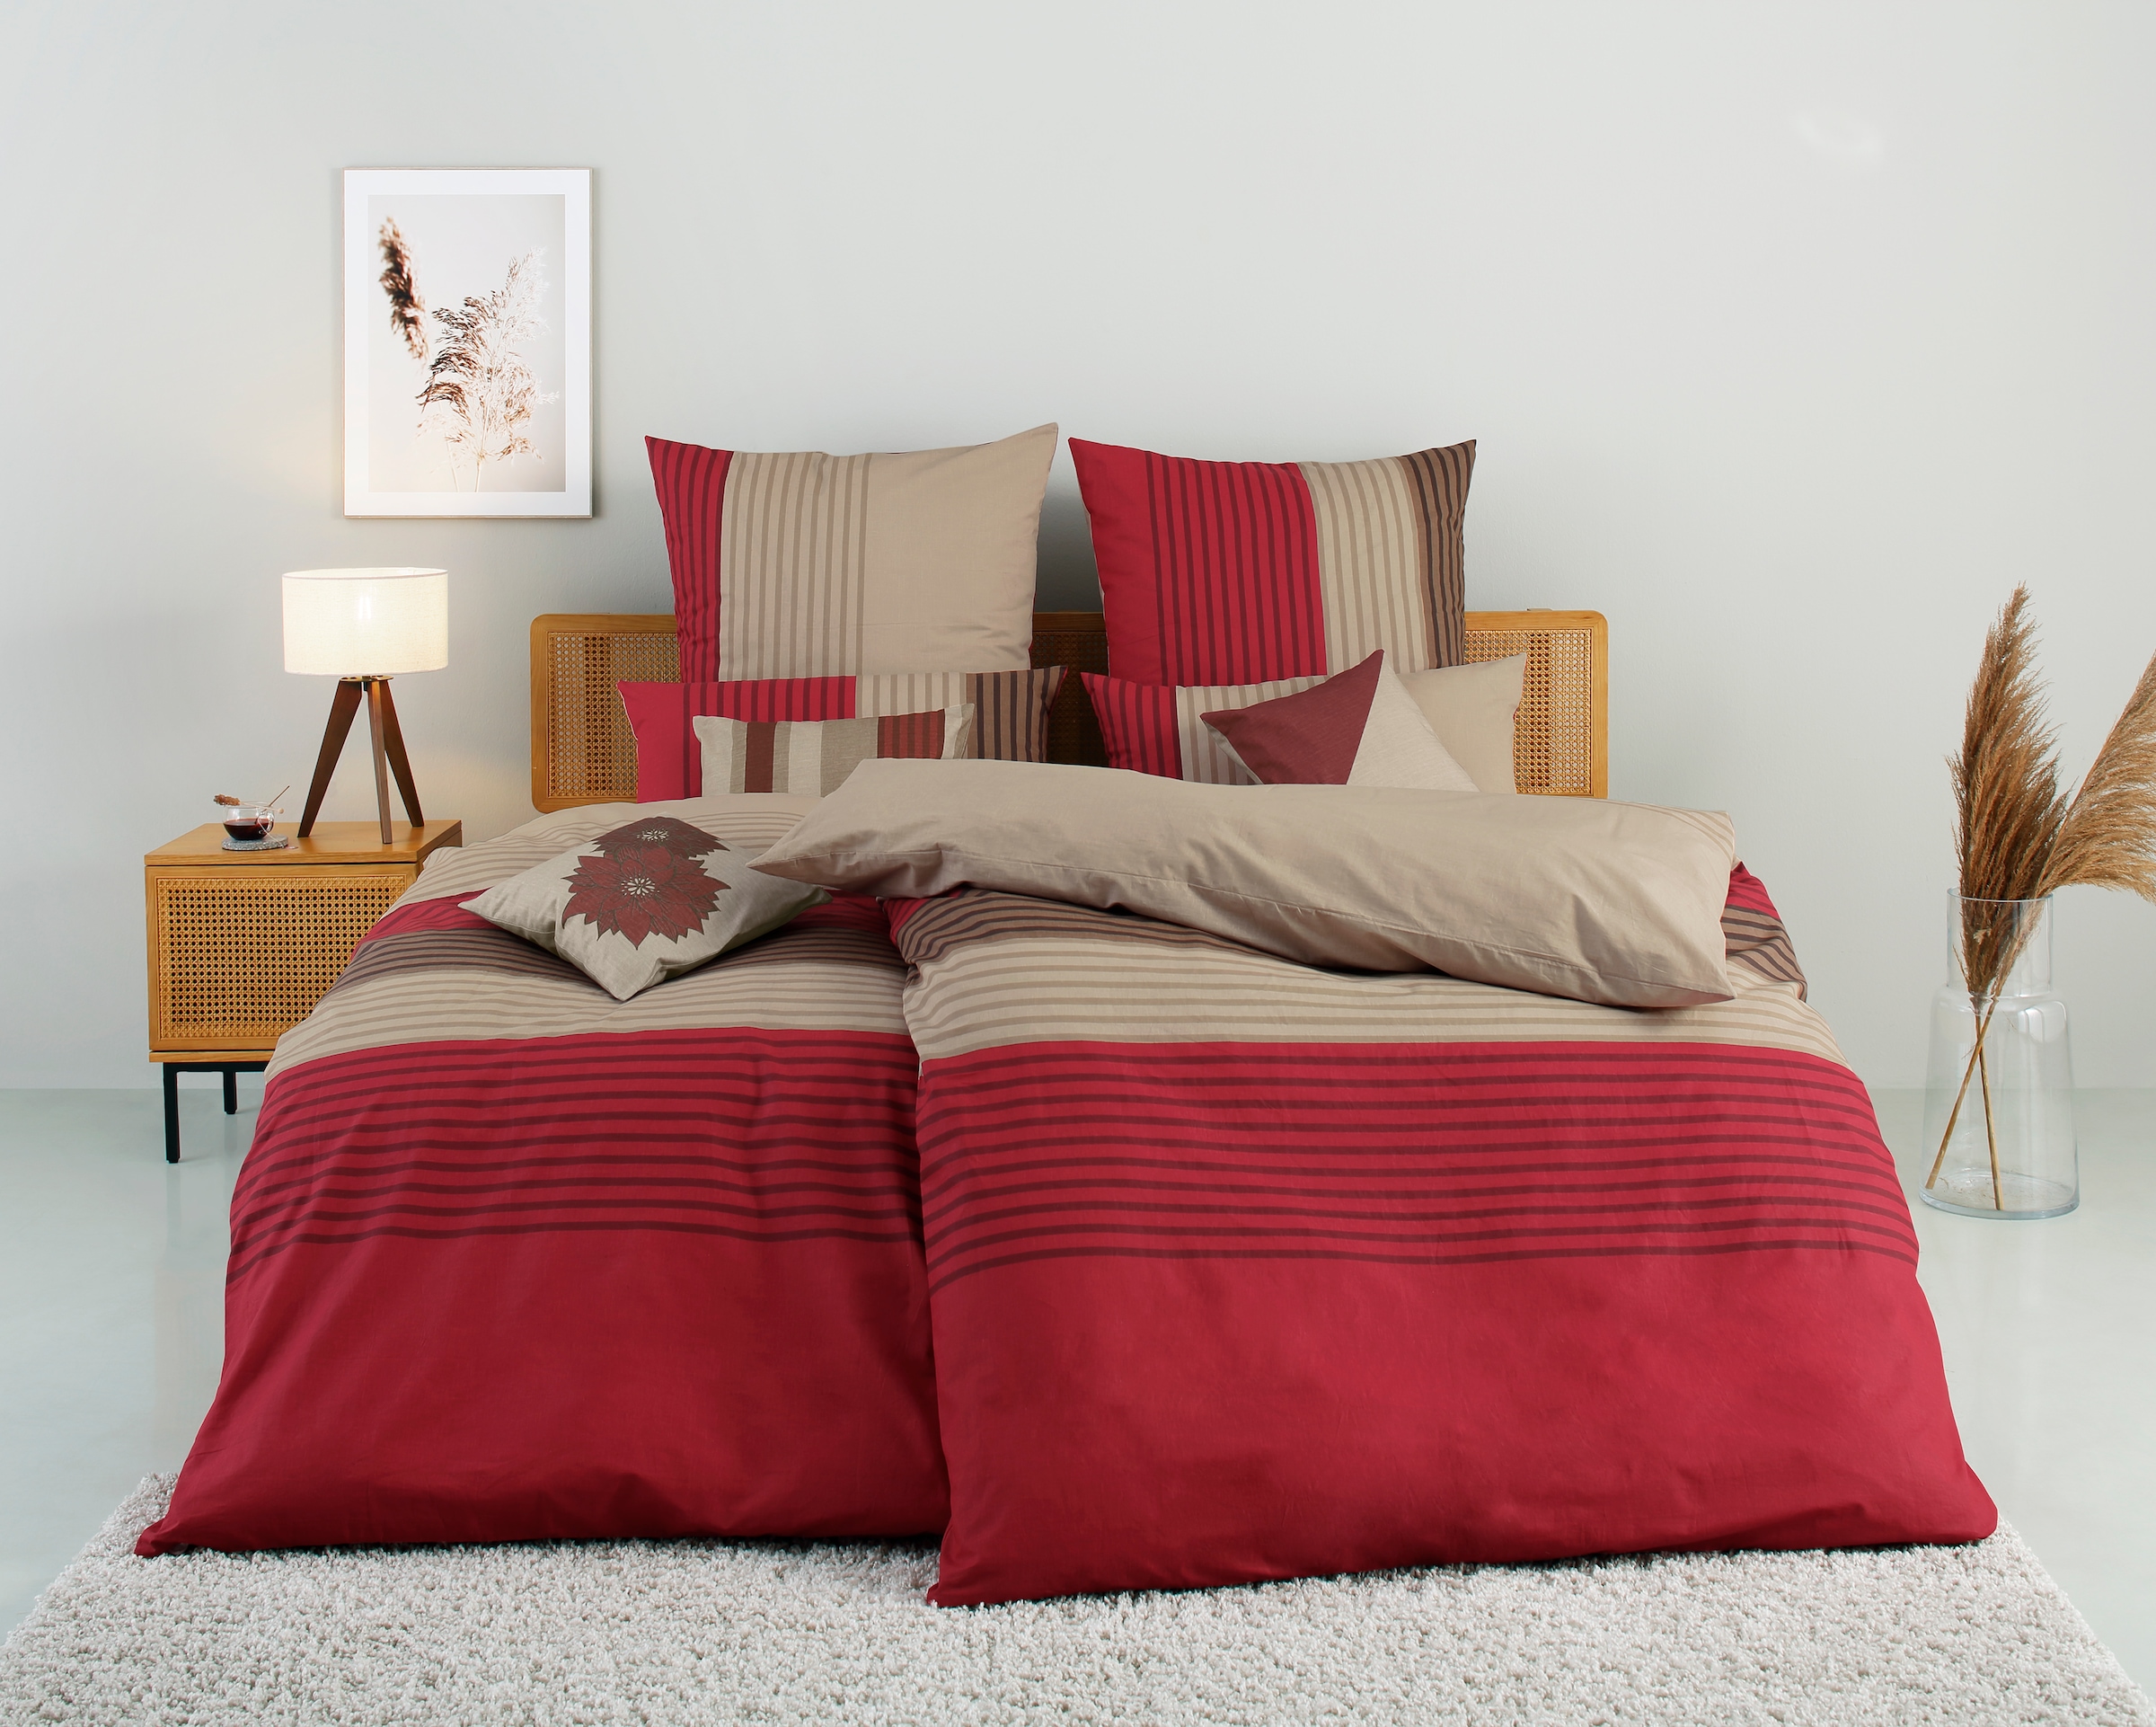 Home affaire Bettwäsche »Anny in Gr. 135x200 oder 155x220 cm«, (2 tlg.),  Bettwäsche aus Baumwolle, Bettwäsche mit Streifen-Design